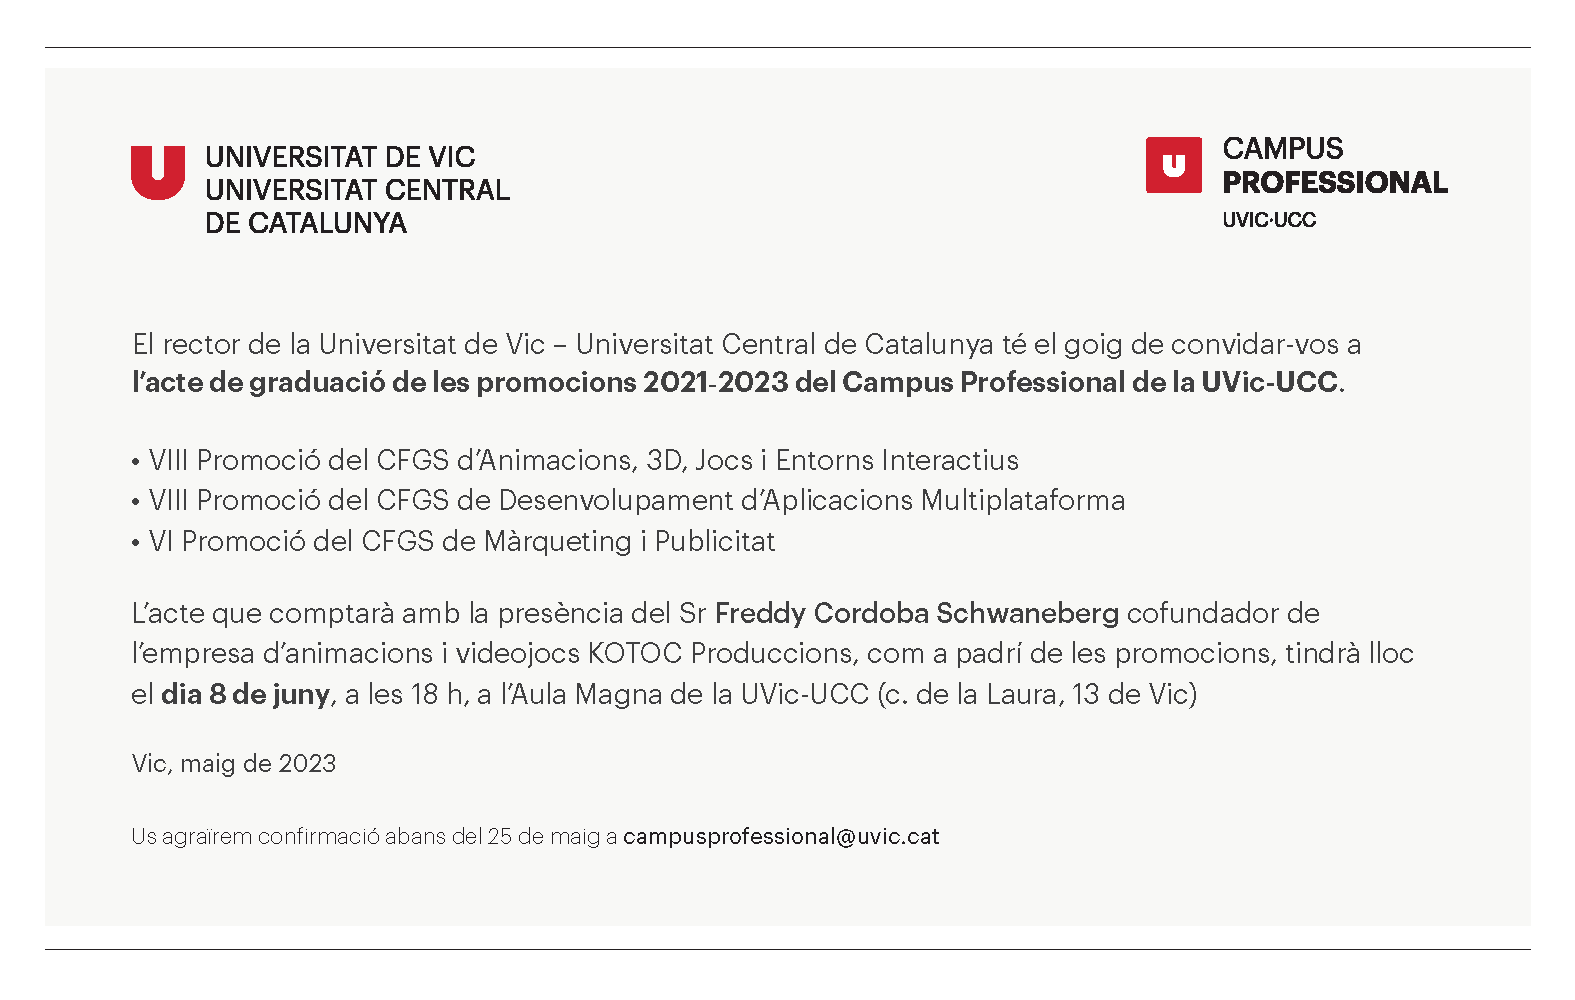 El rector de la Universitat de Vic – Universitat Central de Catalunya té el goig de convidar-vos a l’acte de graduació de les promocions 2021-2023 del Campus Professional de la UVic-UCC. •VIII Promoció del CFGS d’Animacions, 3D, Jocs i Entorns Interactius •VIII Promoció del CFGS de Desenvolupament d’Aplicacions Multiplataforma •VI Promoció del CFGS de Màrqueting i Publicitat L’acte que comptarà amb la presència del Sr Freddy Cordoba Schwaneberg cofundador de l’empresa d’animacions i videojocs KOTOC Produccions, com a padrí de les promocions, tindrà lloc el dia 8 de juny, a les 18 h, a l’Aula Magna de la UVic-UCC (c. de la Laura, 13 de Vic) Vic, maig de 2023 Us agraïrem confirmació abans del 25 de maig a campusprofessional@uvic.cat